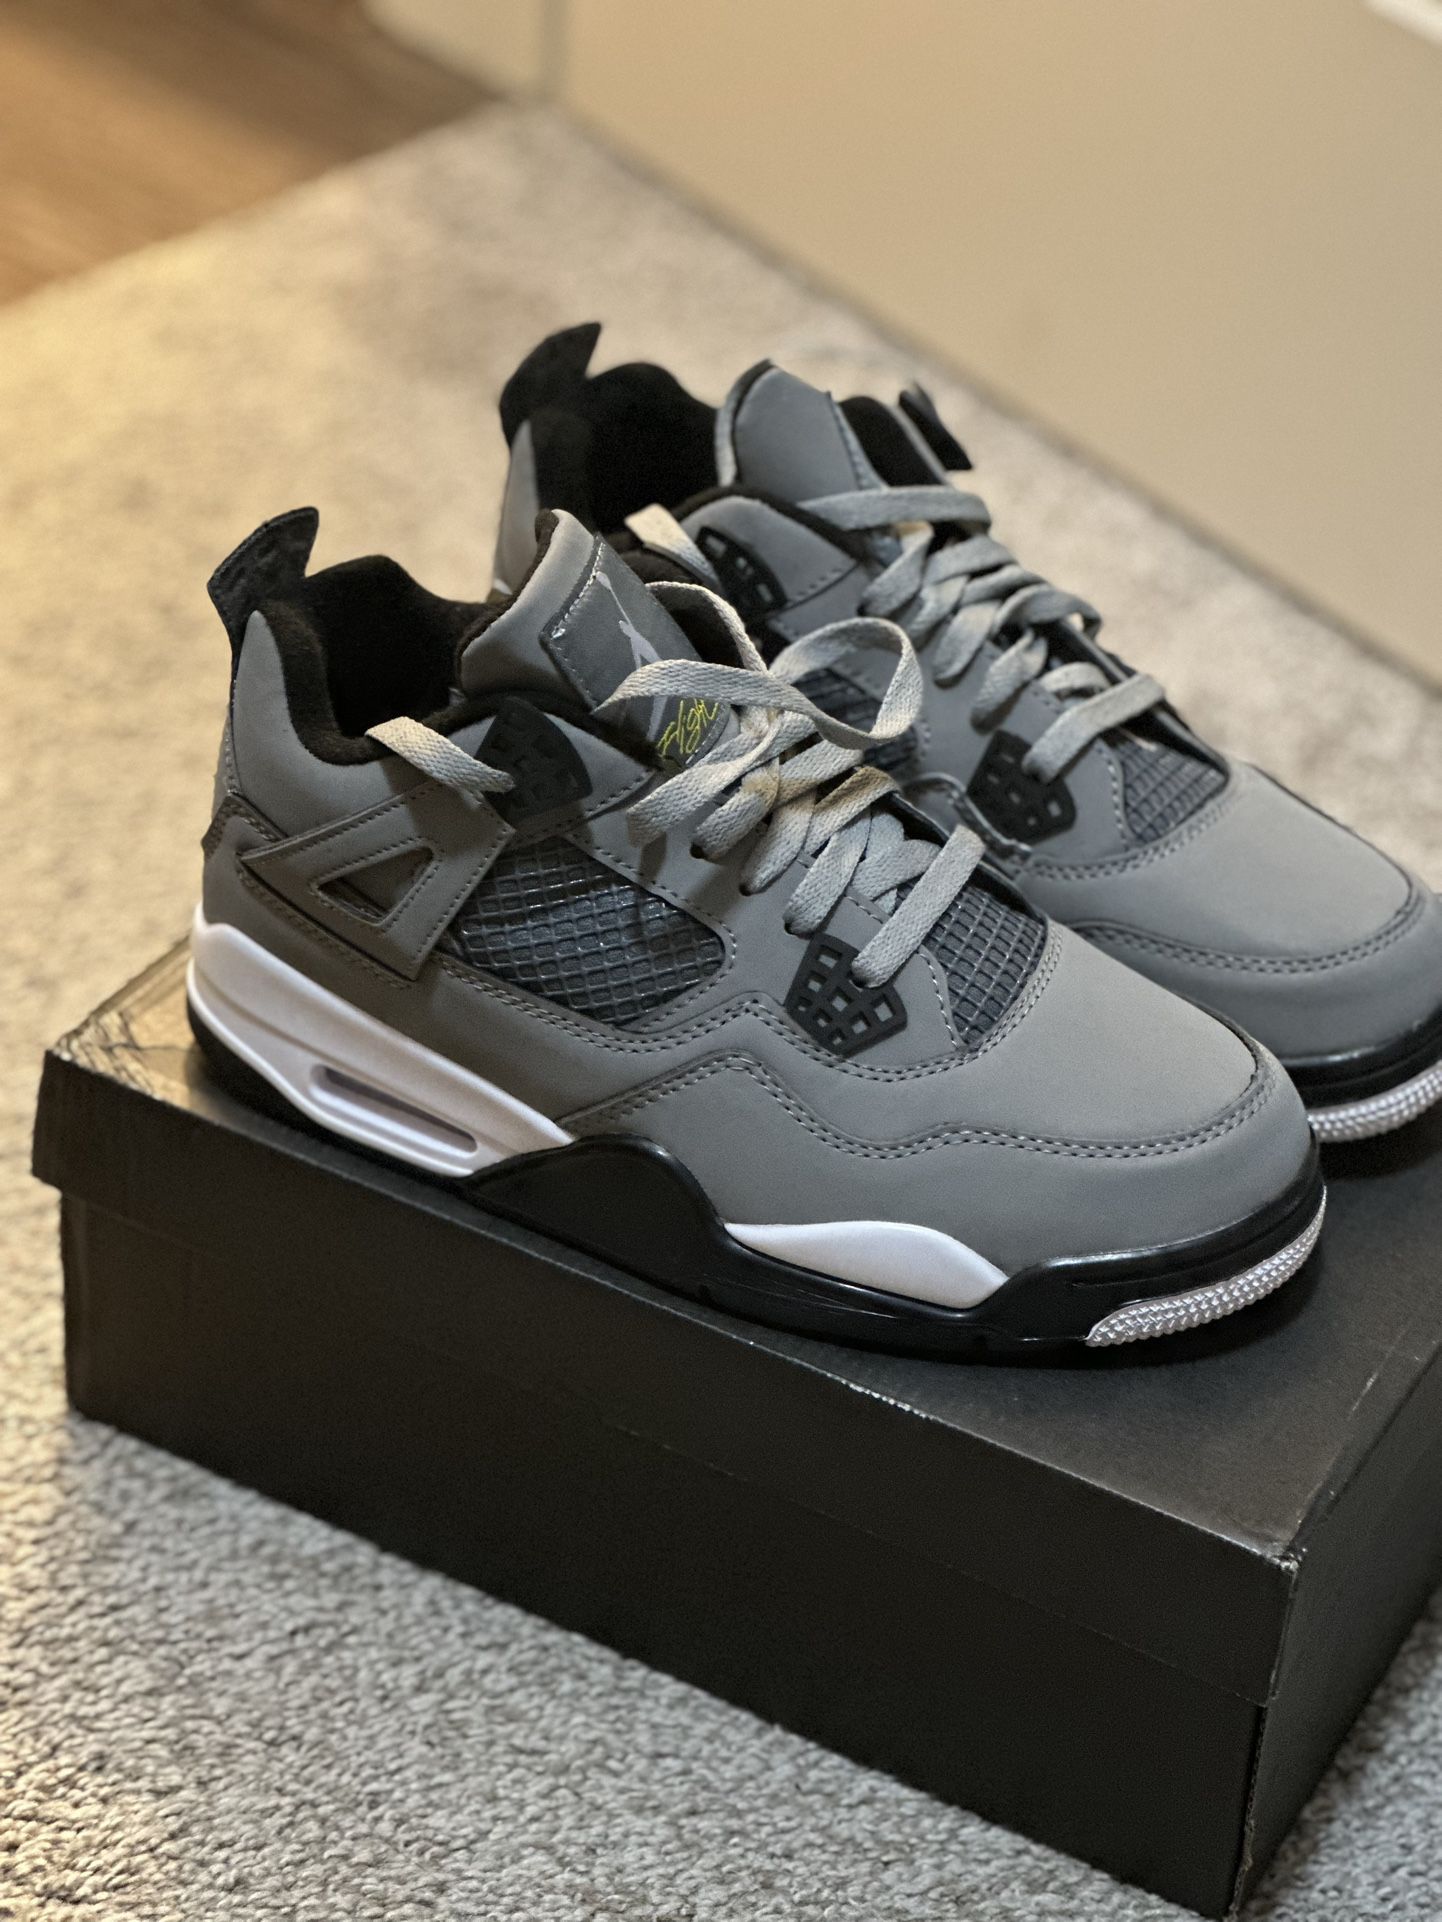 Grey Jordan 4’s (size 8)